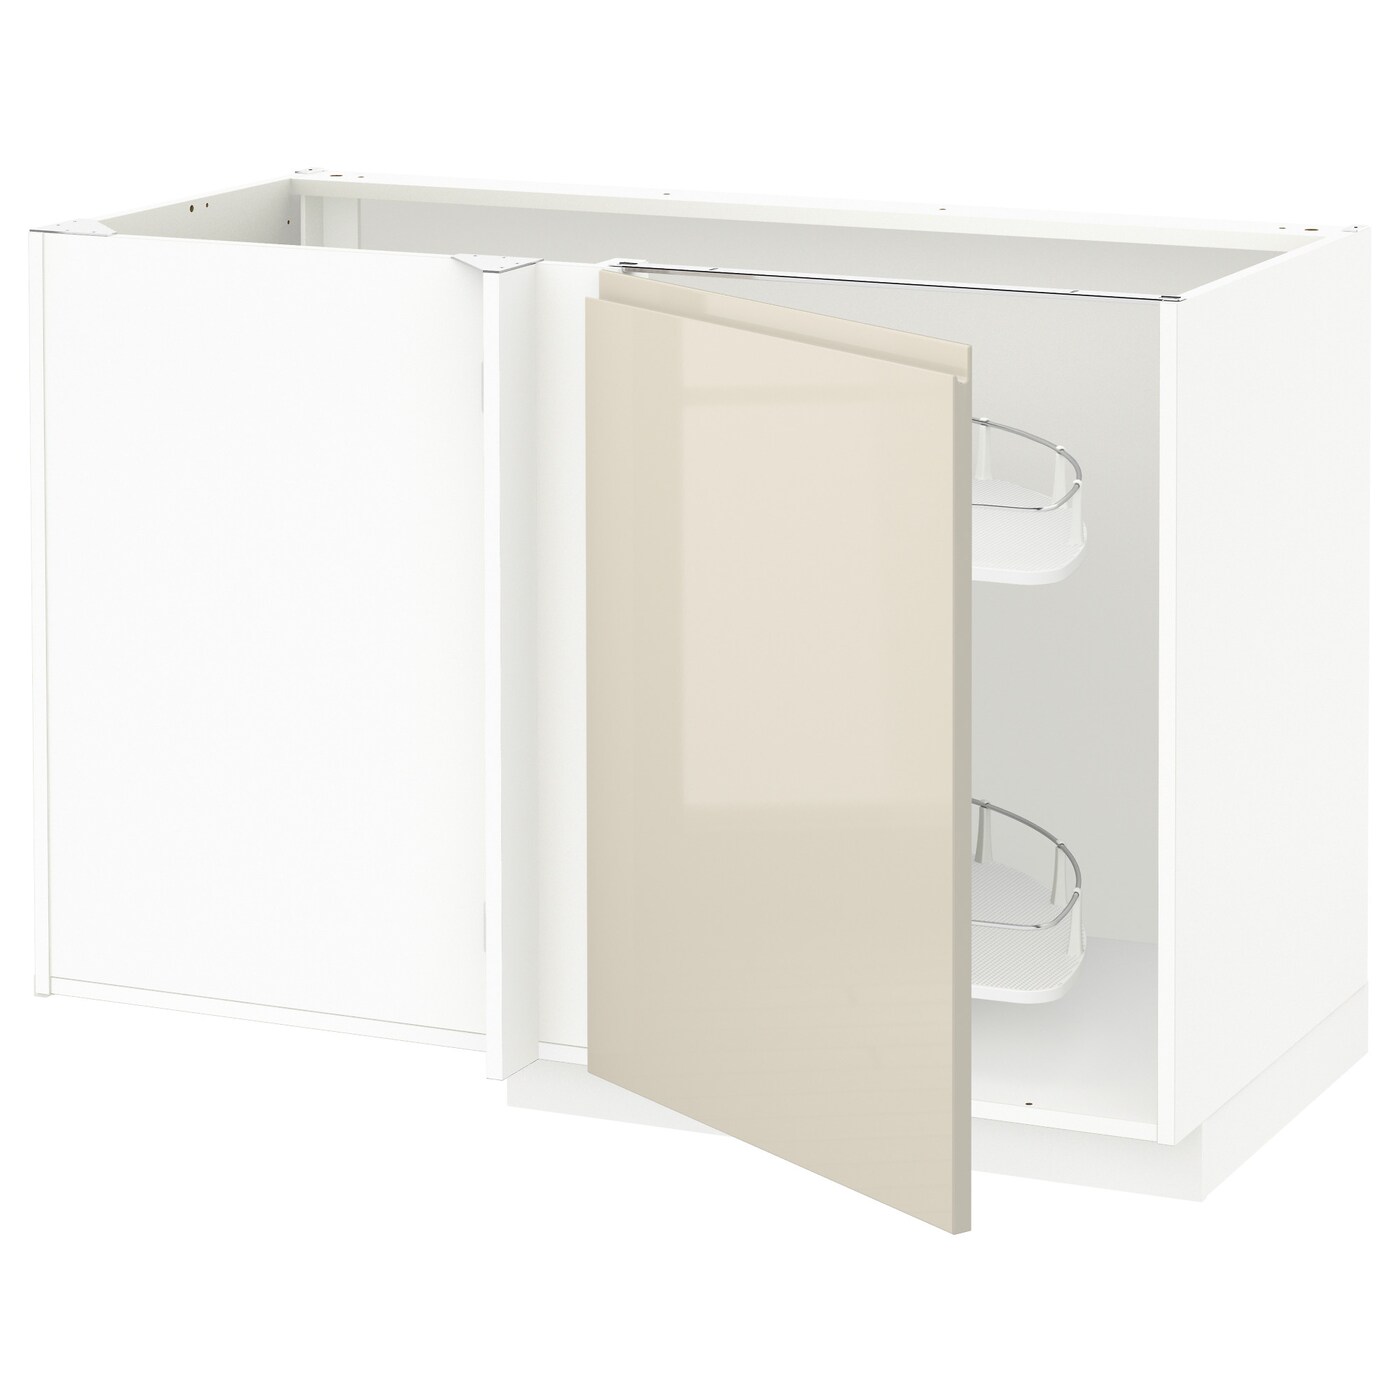 Напольный шкаф - METOD IKEA/ МЕТОД ИКЕА,  127,5х88 см, белый/светло-бежевый